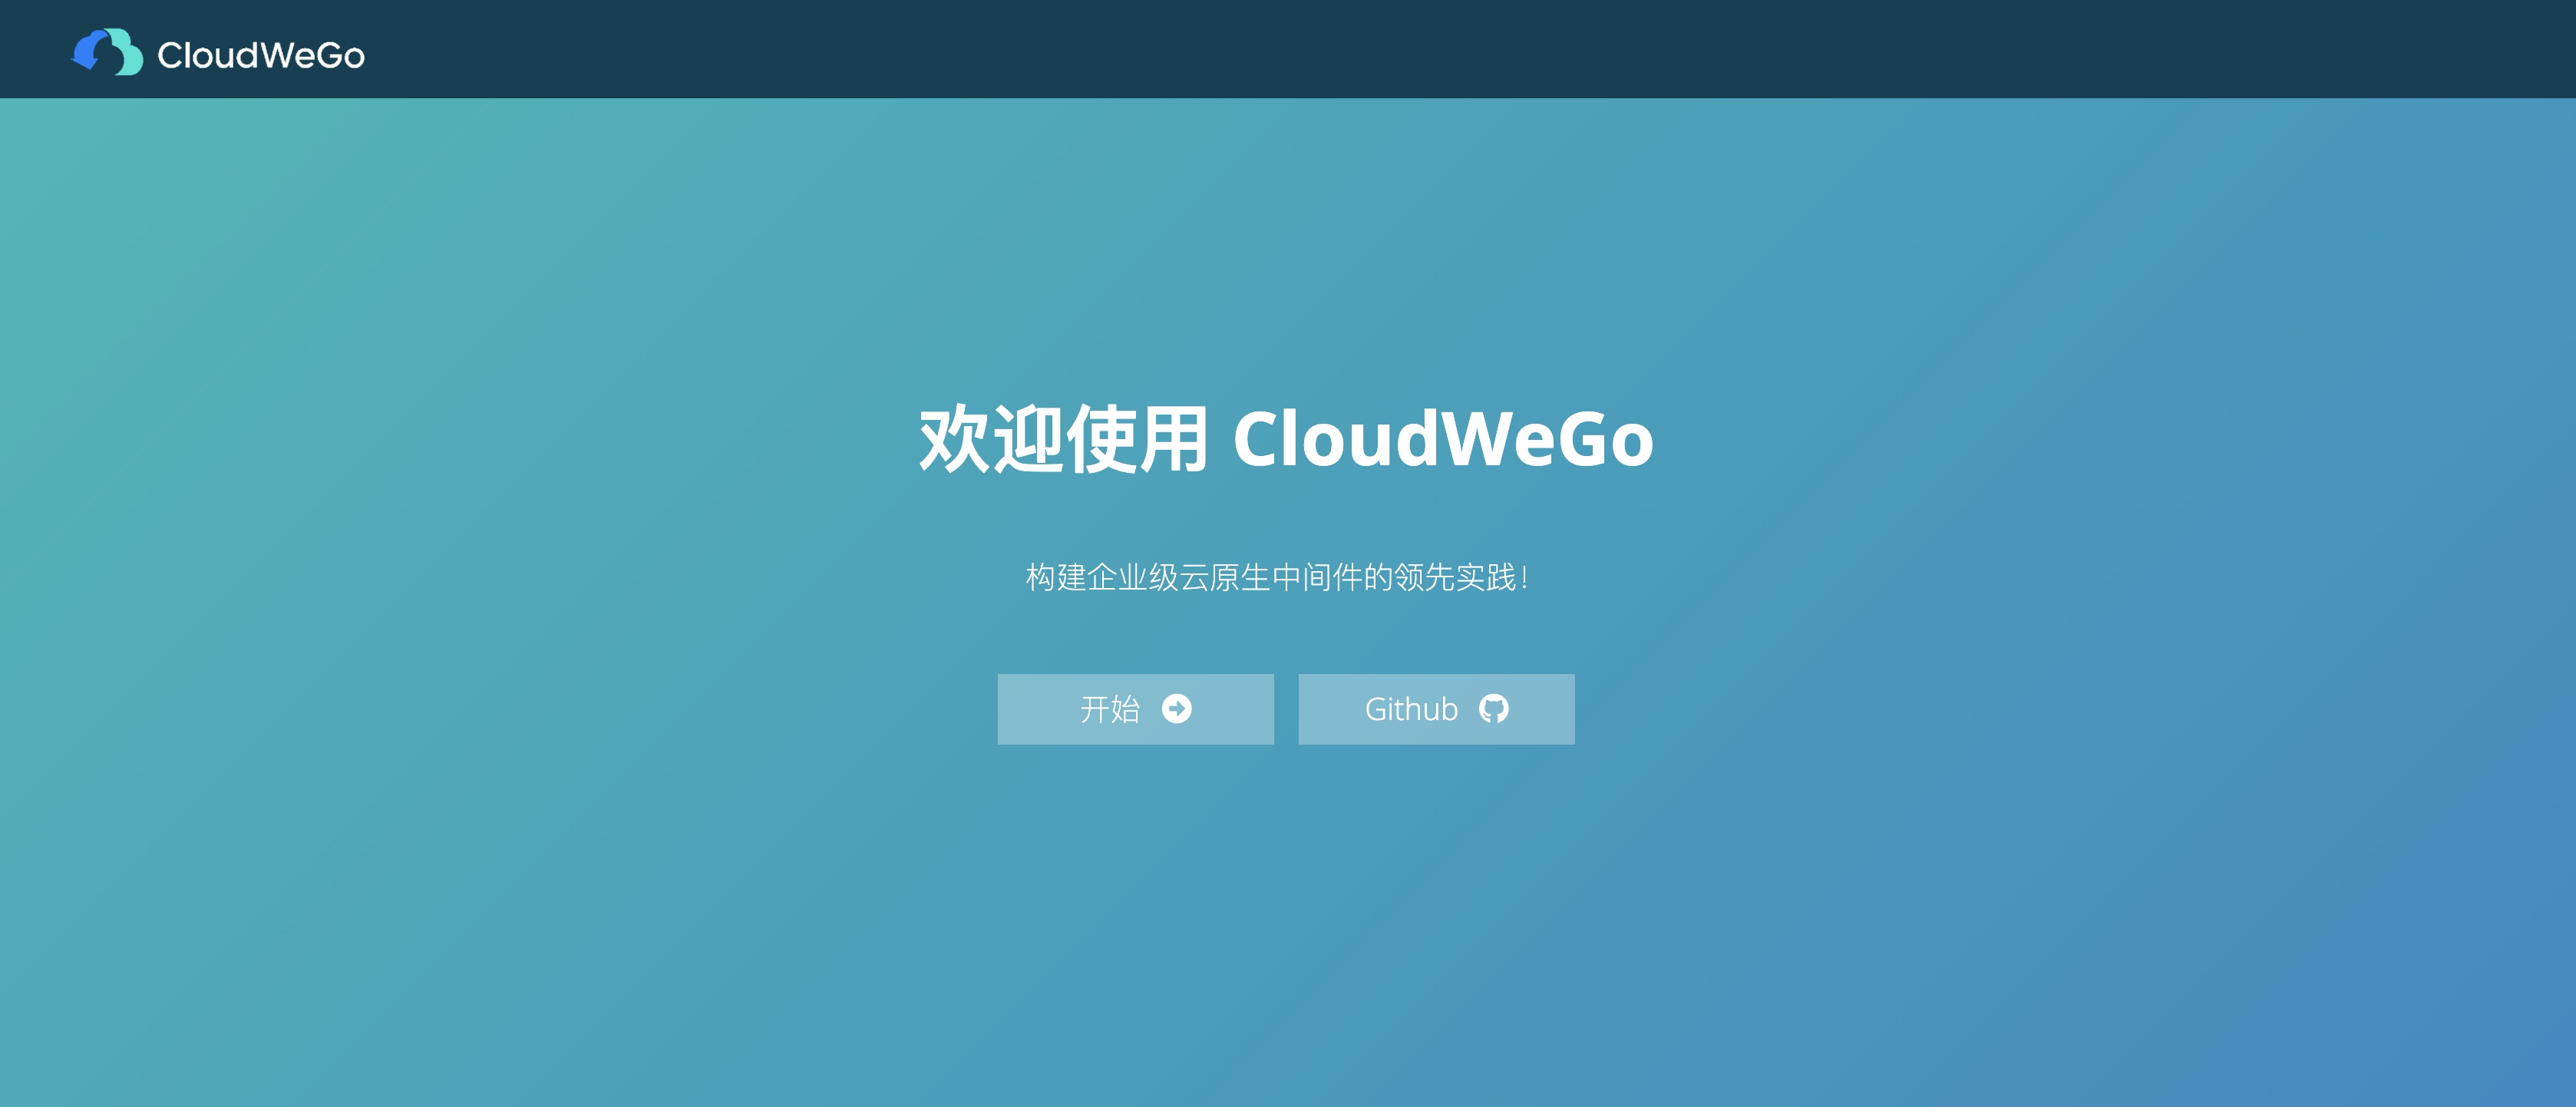 如何给 CloudWeGo 做贡献